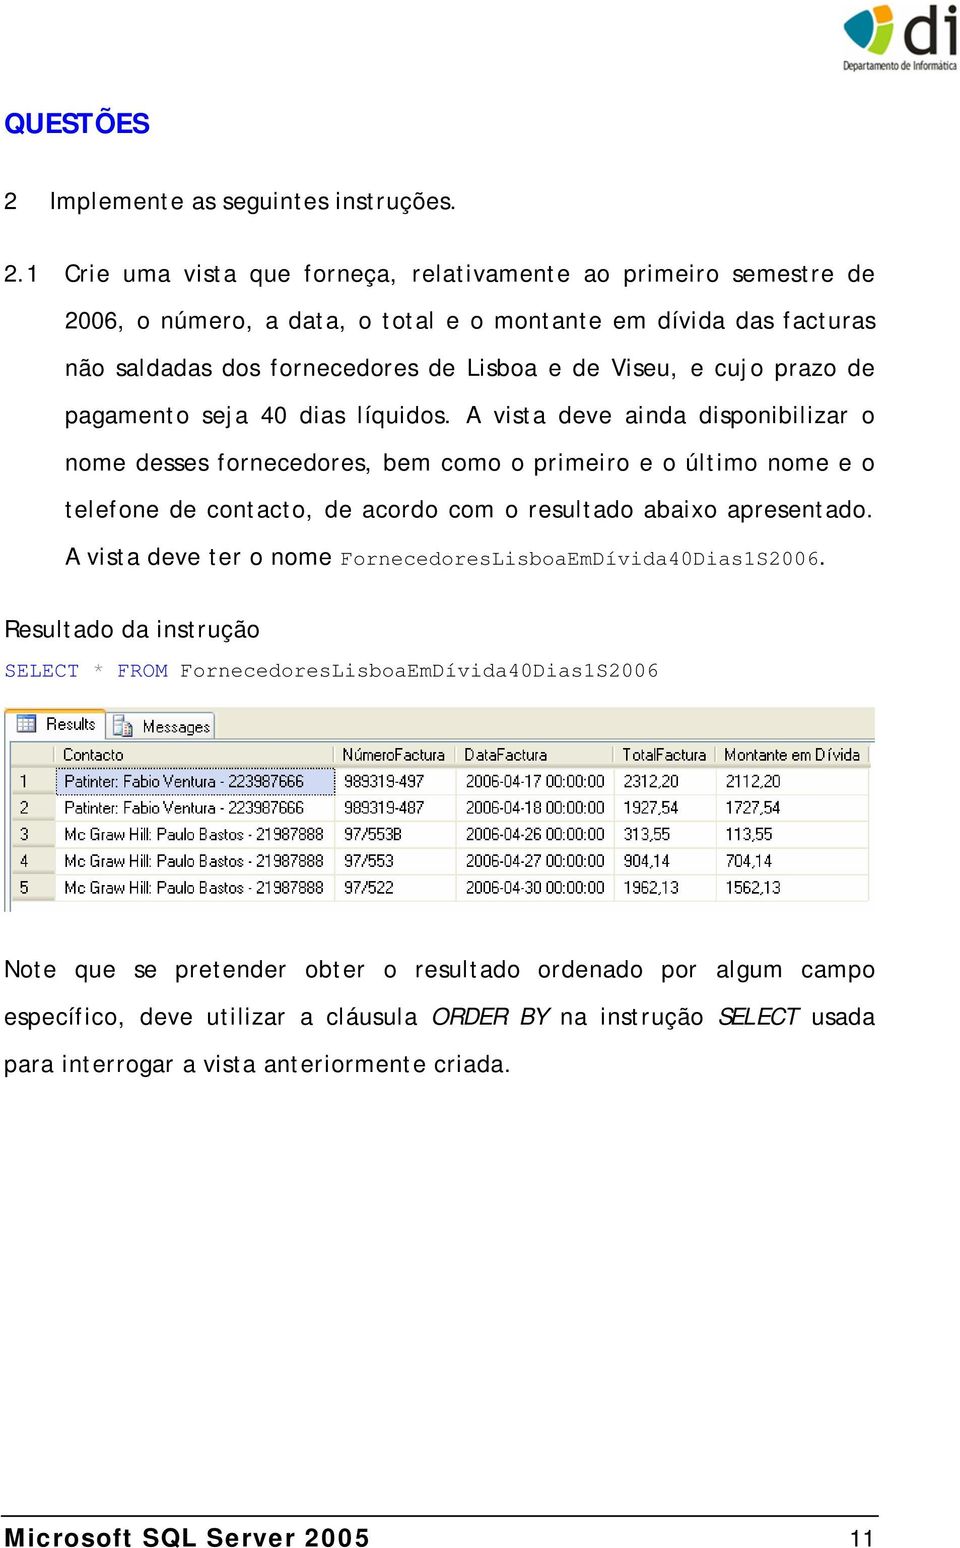 1 Crie uma vista que forneça, relativamente ao primeiro semestre de 2006, o número, a data, o total e o montante em dívida das facturas não saldadas dos fornecedores de Lisboa e de Viseu, e cujo